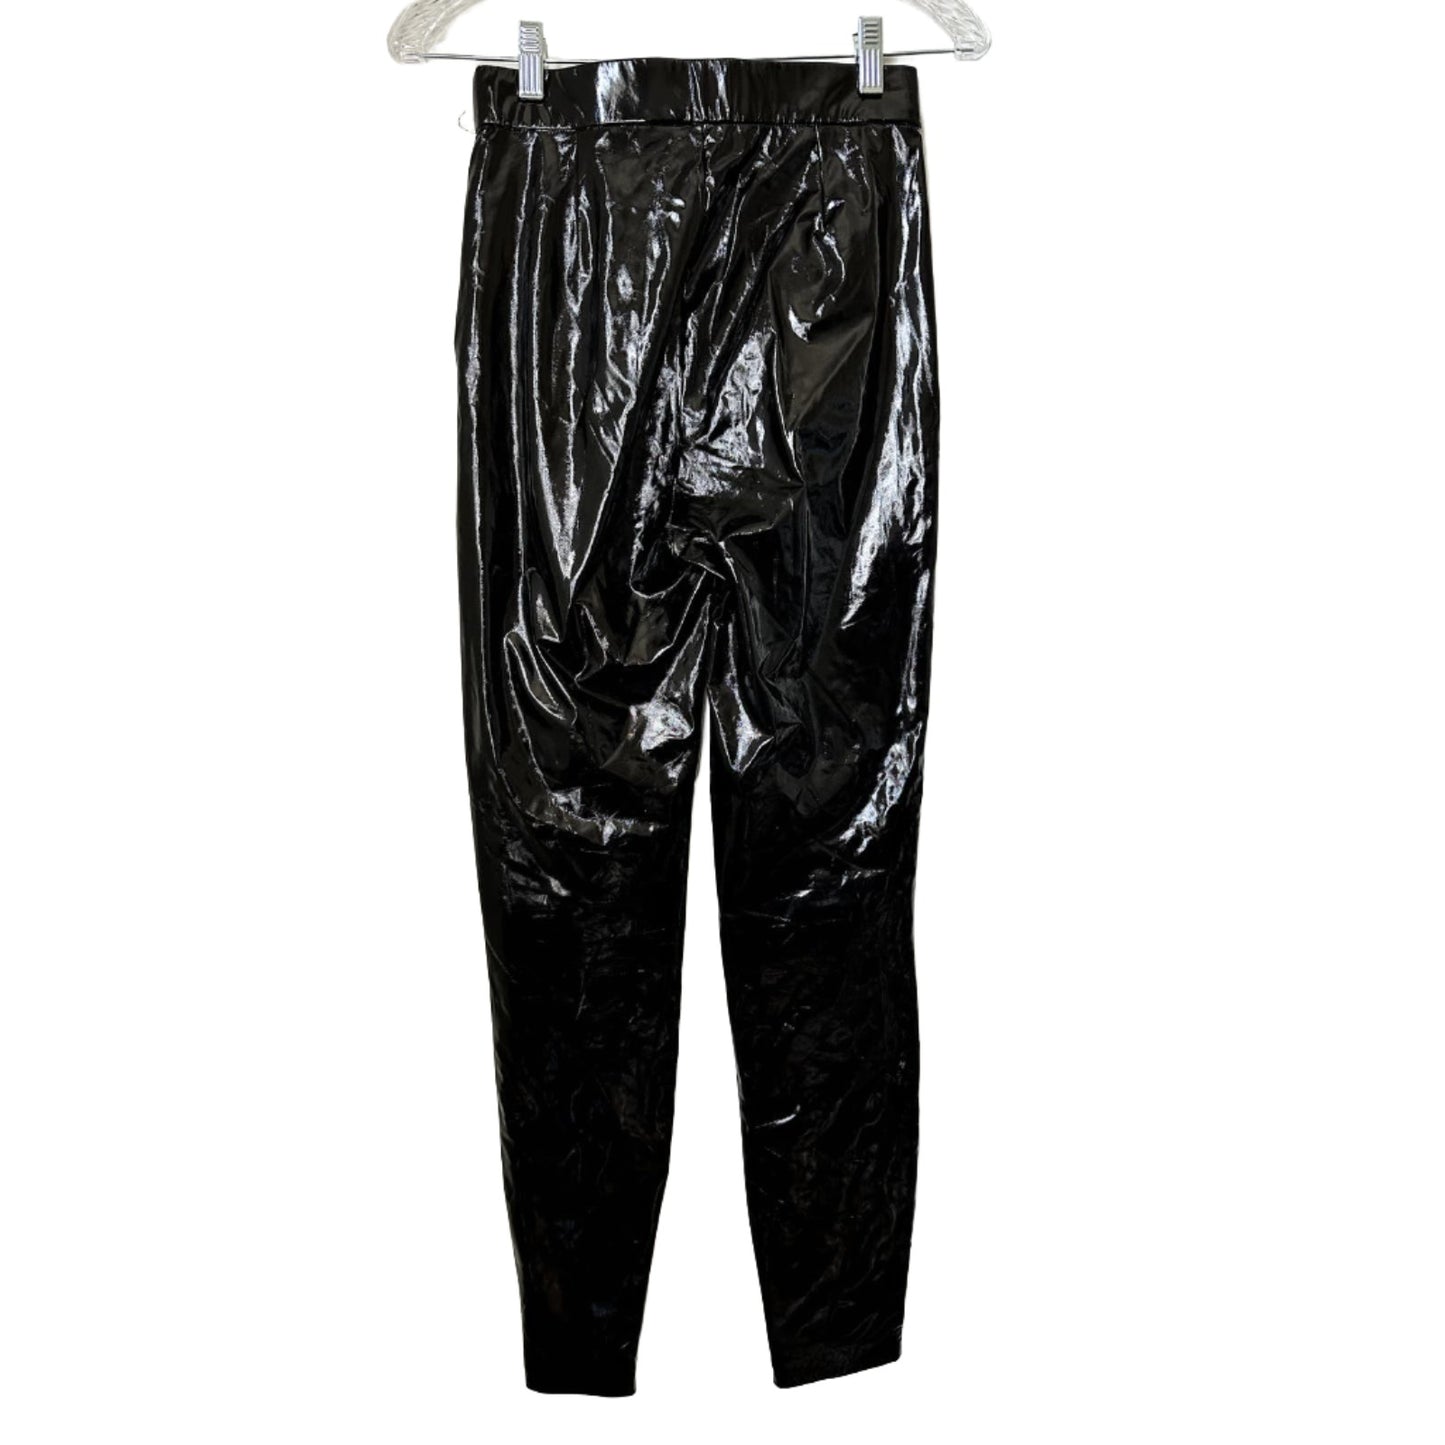 Zara Faux Leather / Latex Pants , Size XS